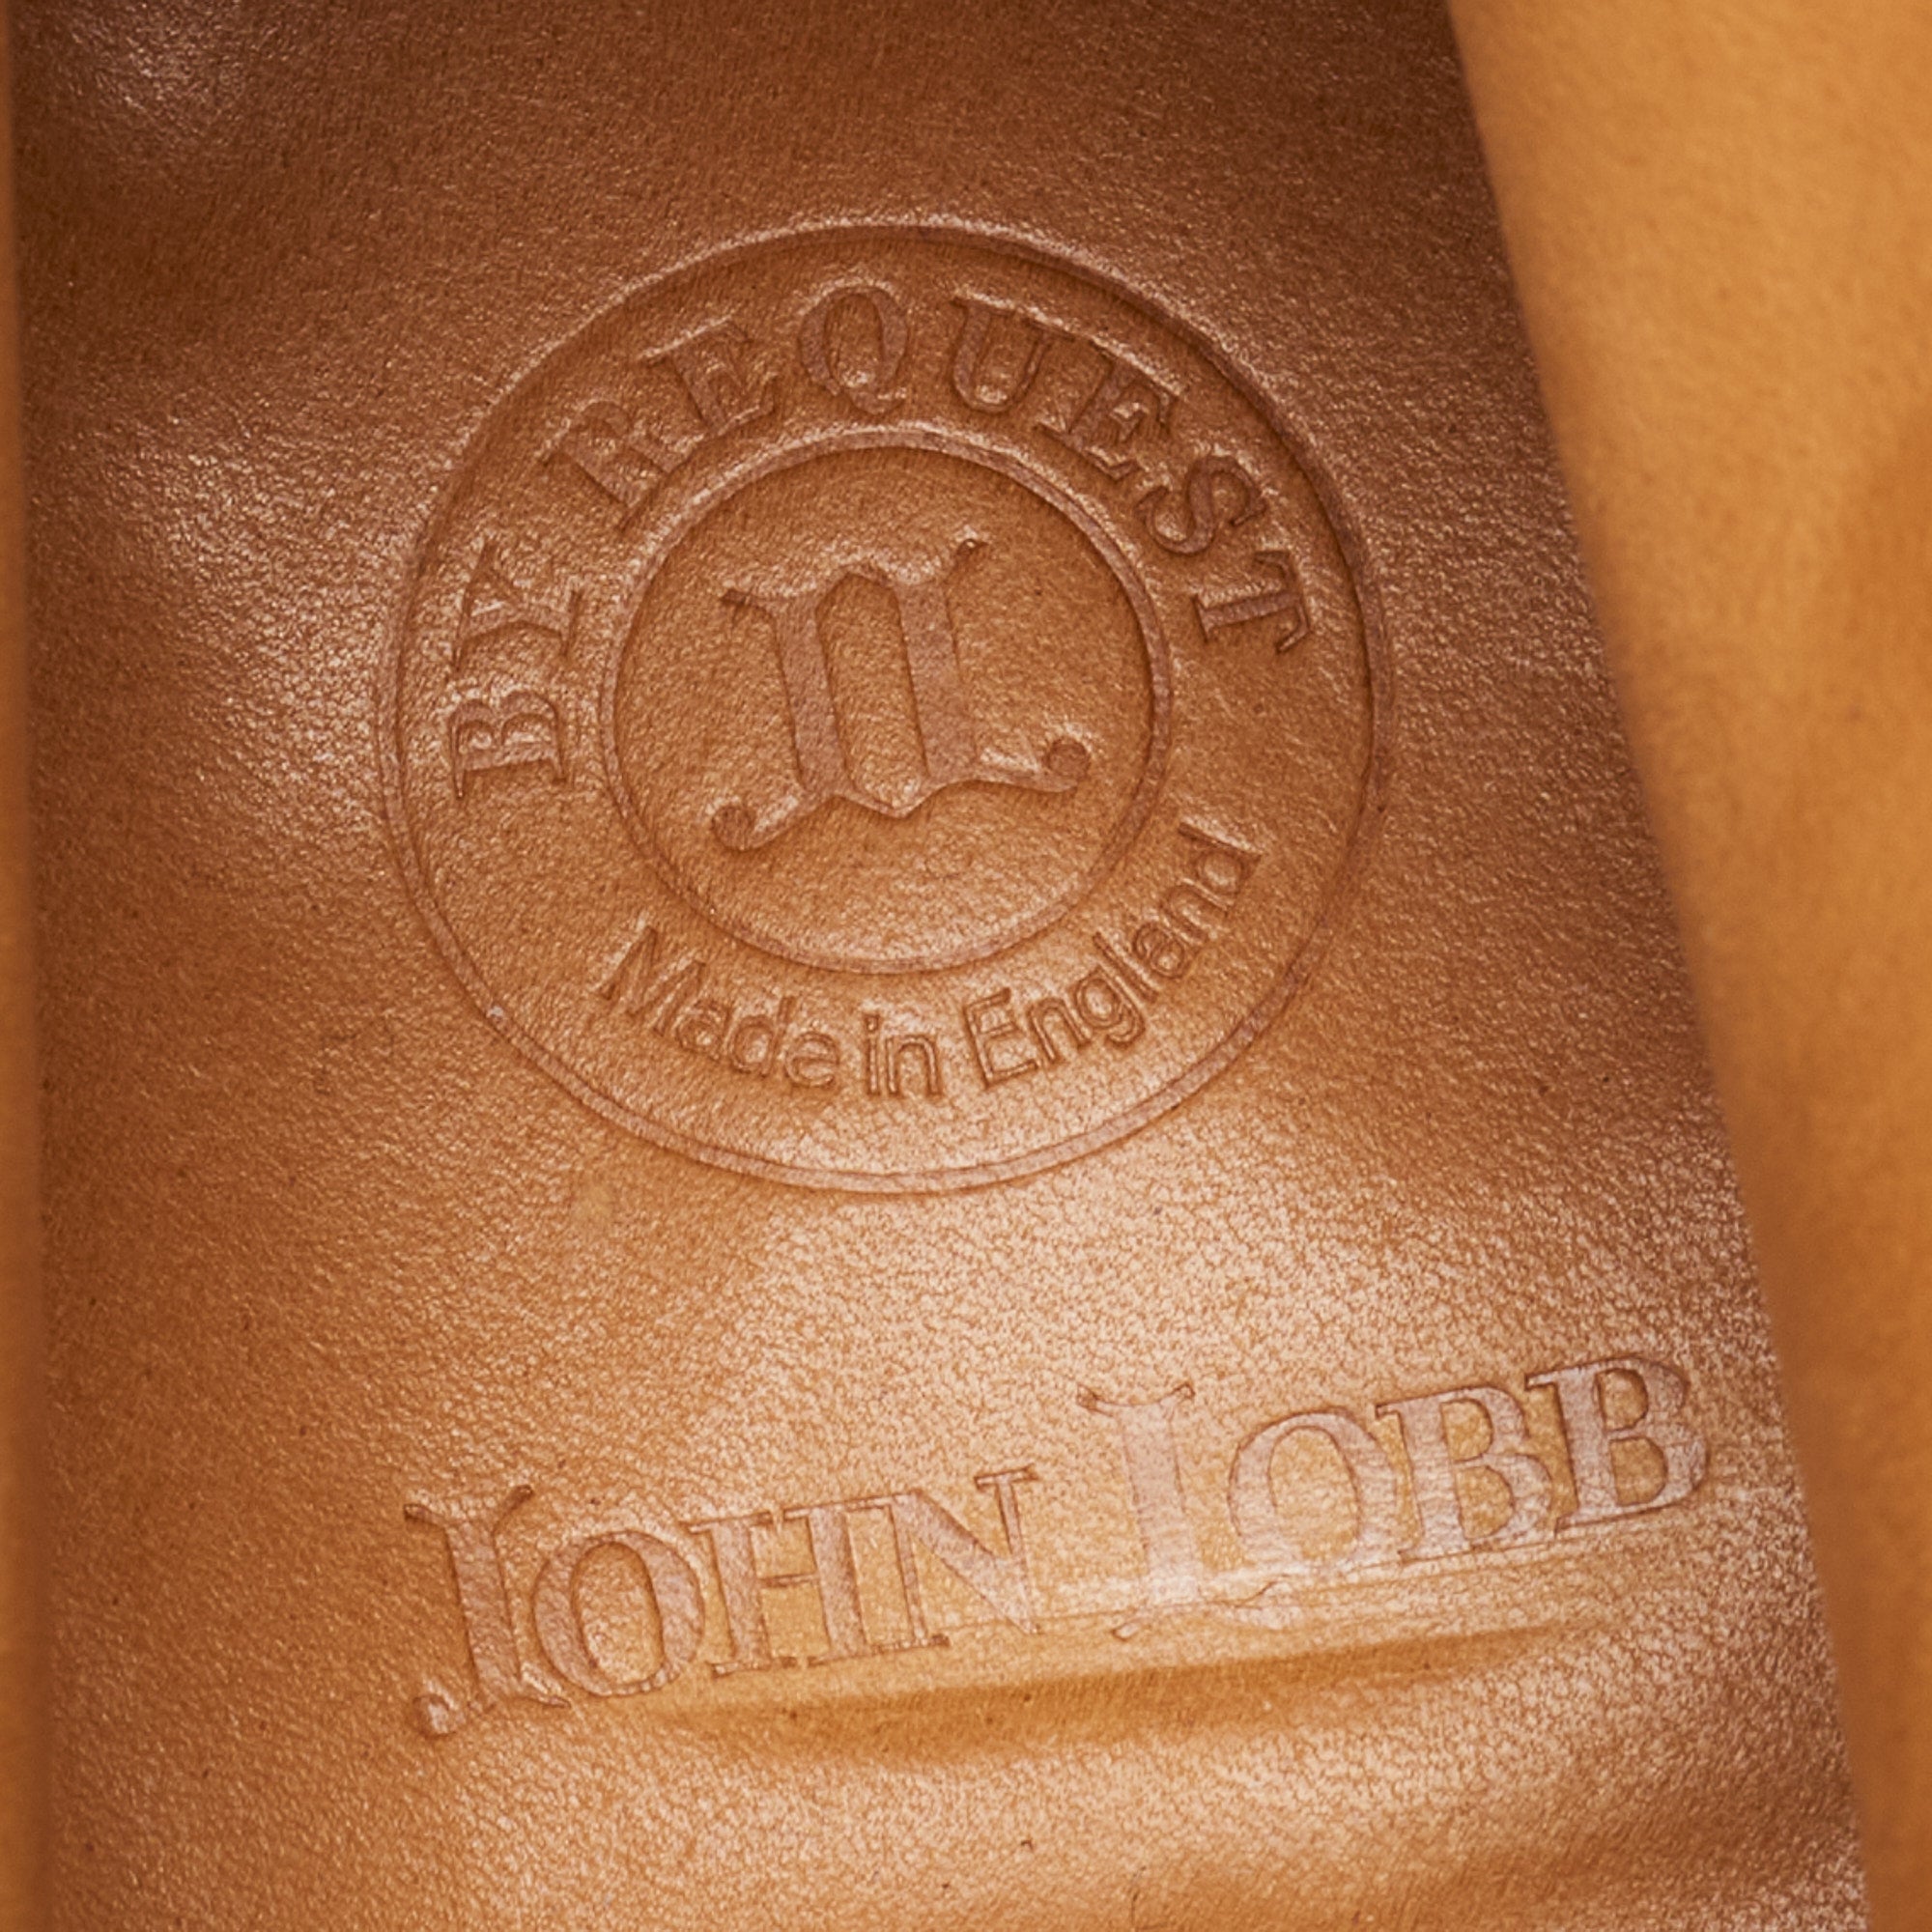 JOHN LOBB By REQUEST "Jodhpur II" Suede Jodhpur Boots UK 7.5E US 8.5 Last 7000B JOHN LOBB